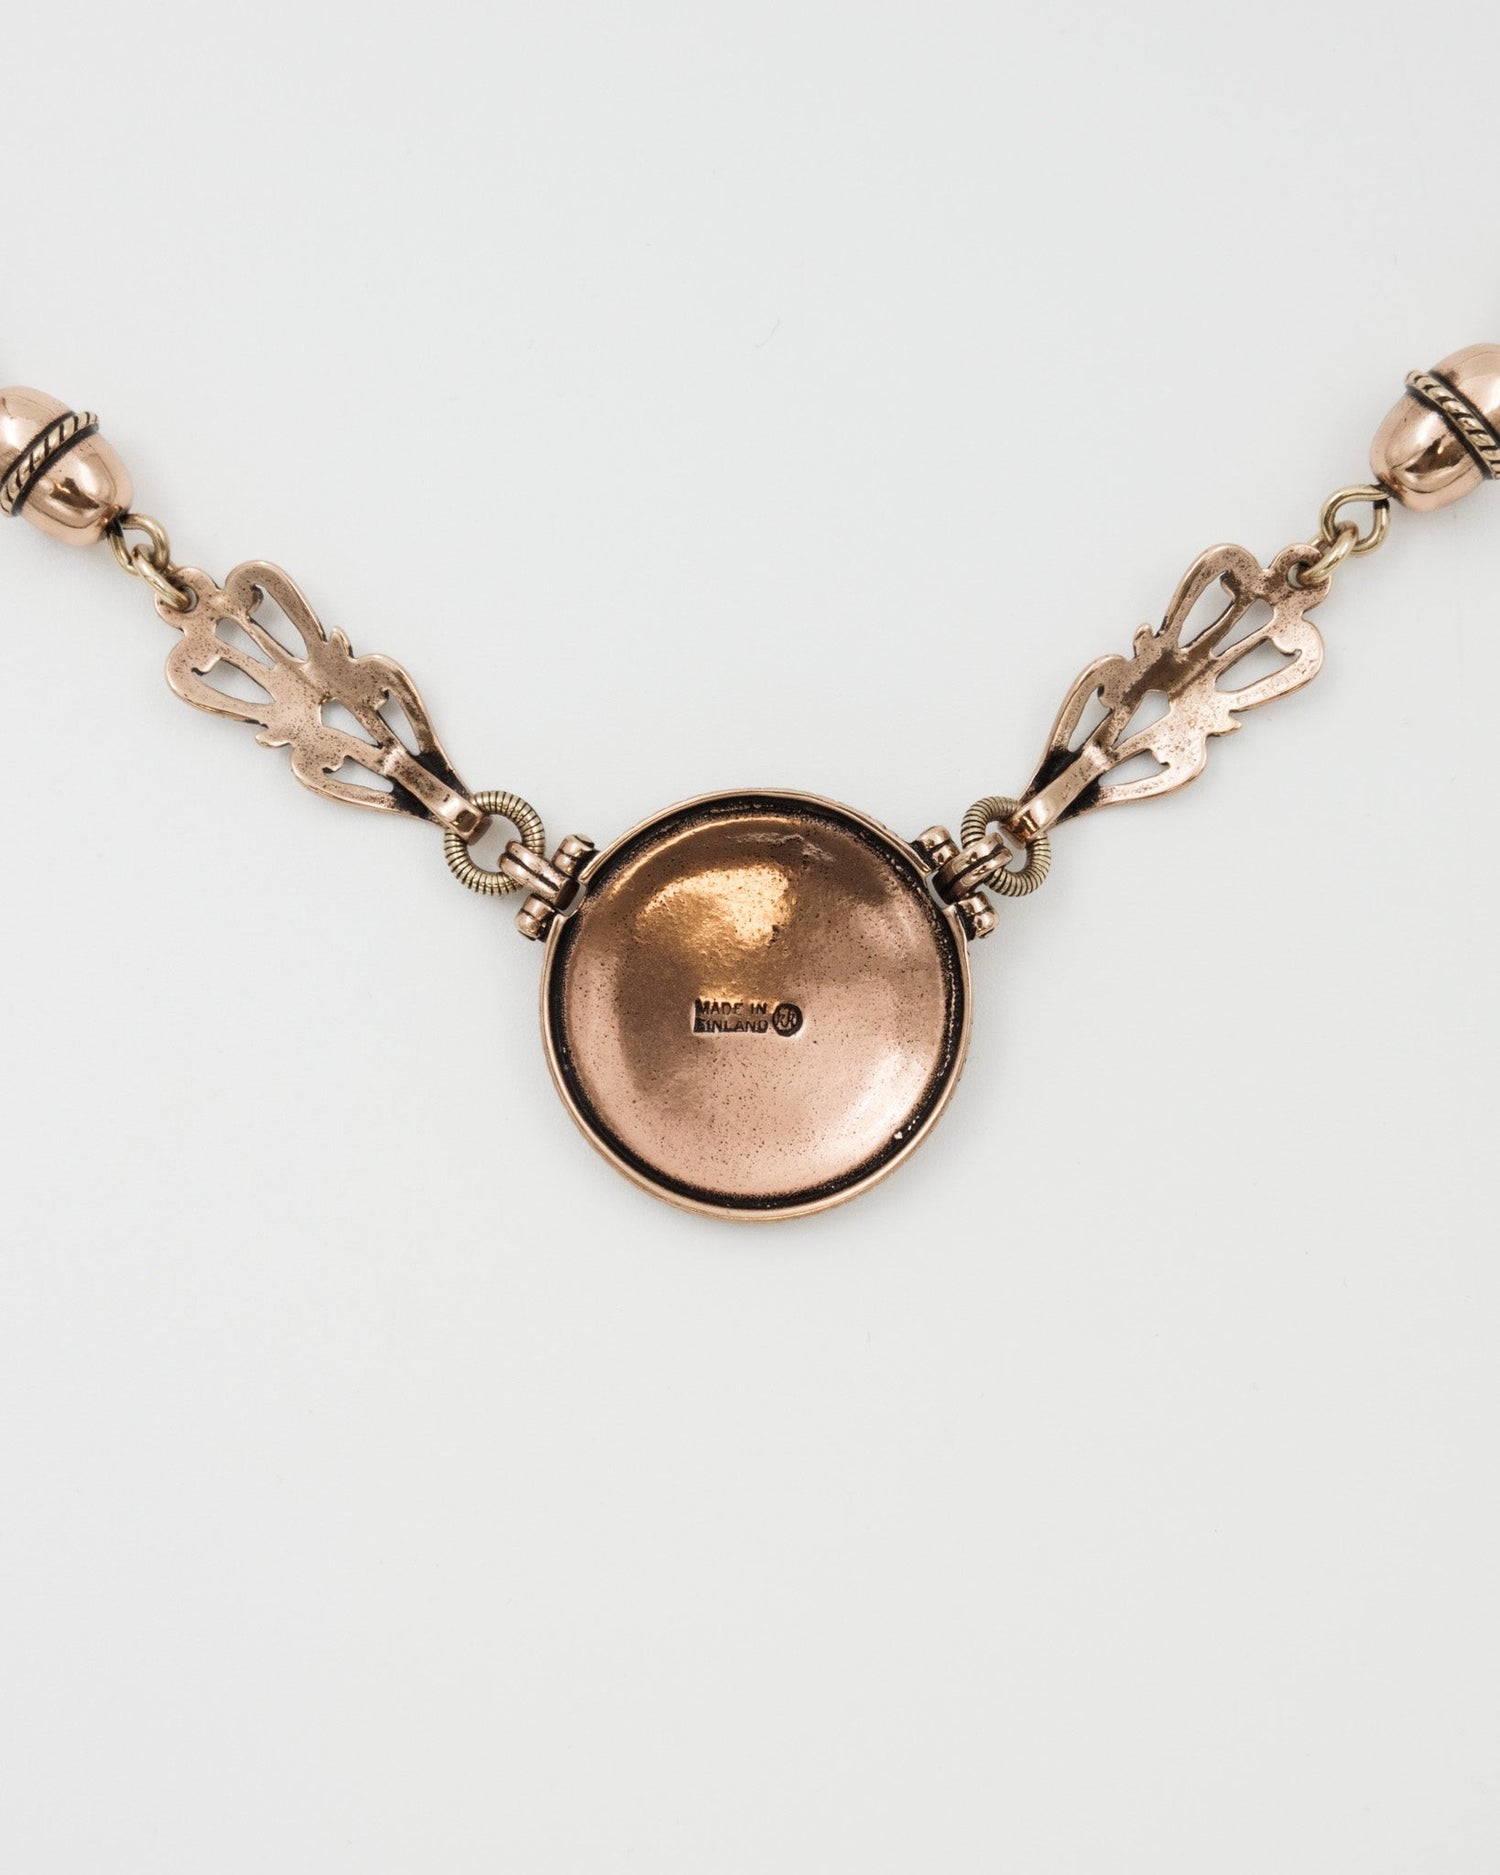 Kept Sun Lion necklace small 45 cm bronze